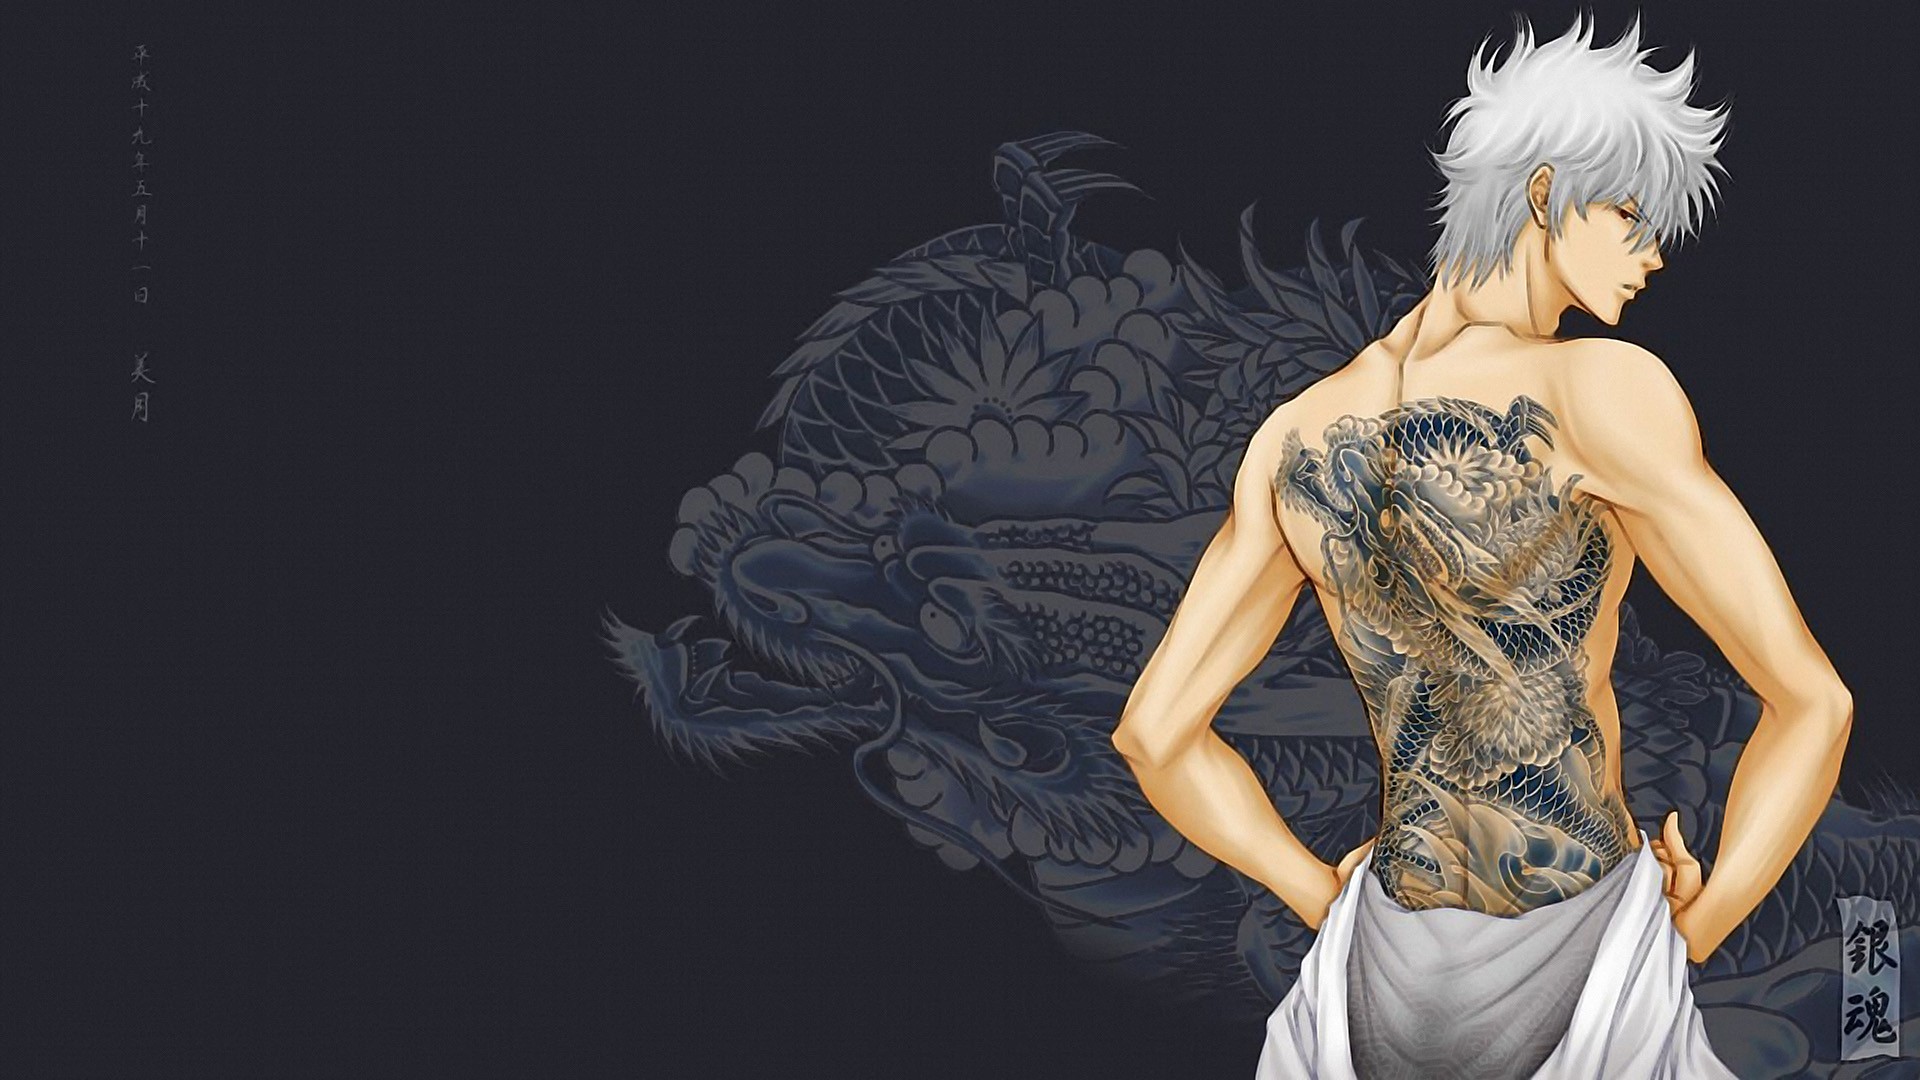 Gintama Sakata Gintoki Dragon Tattoo 1920x1080